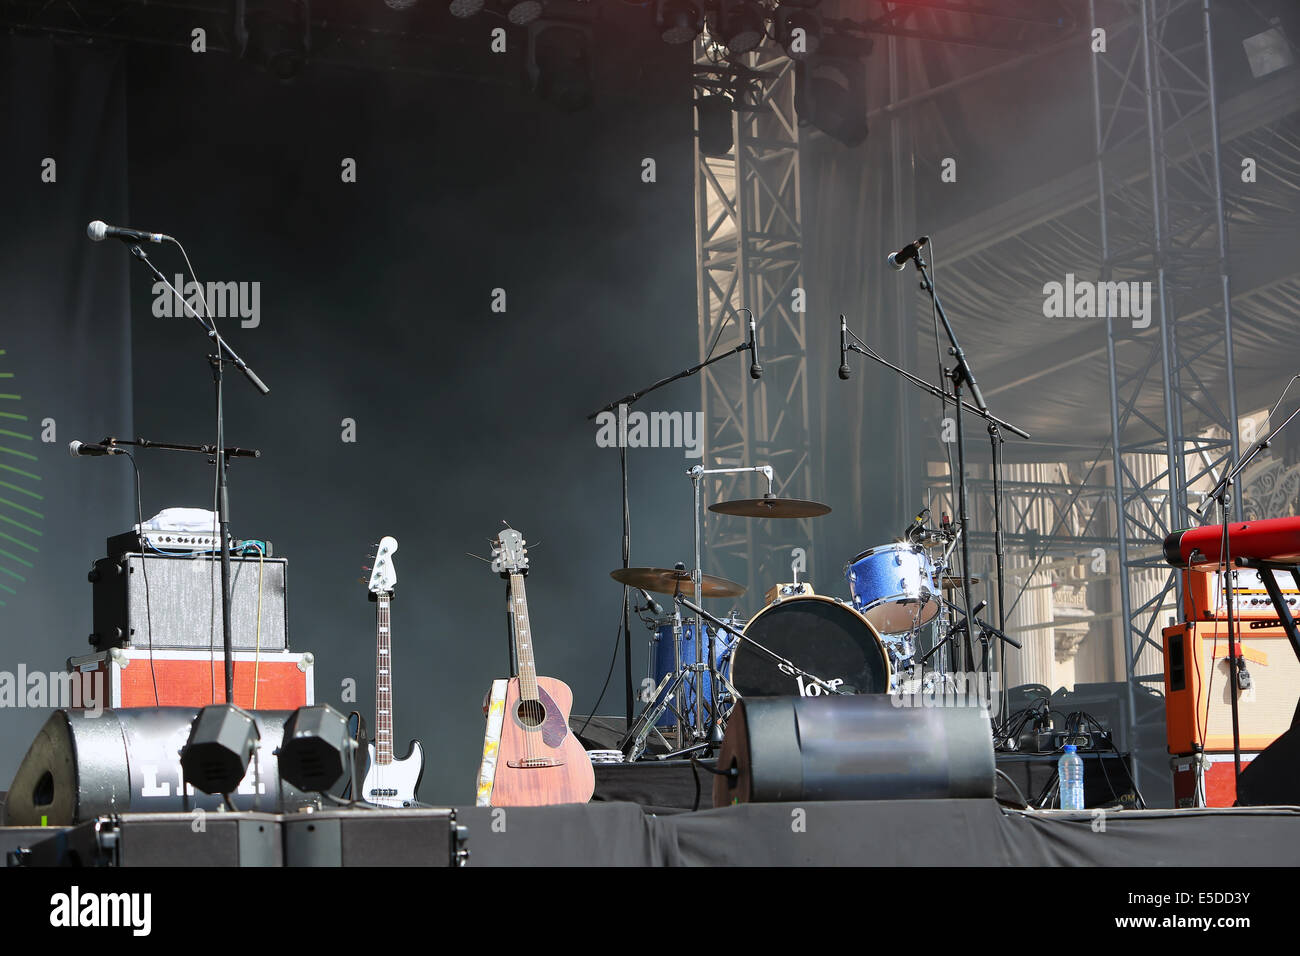 Empty concert stage Stock Photo